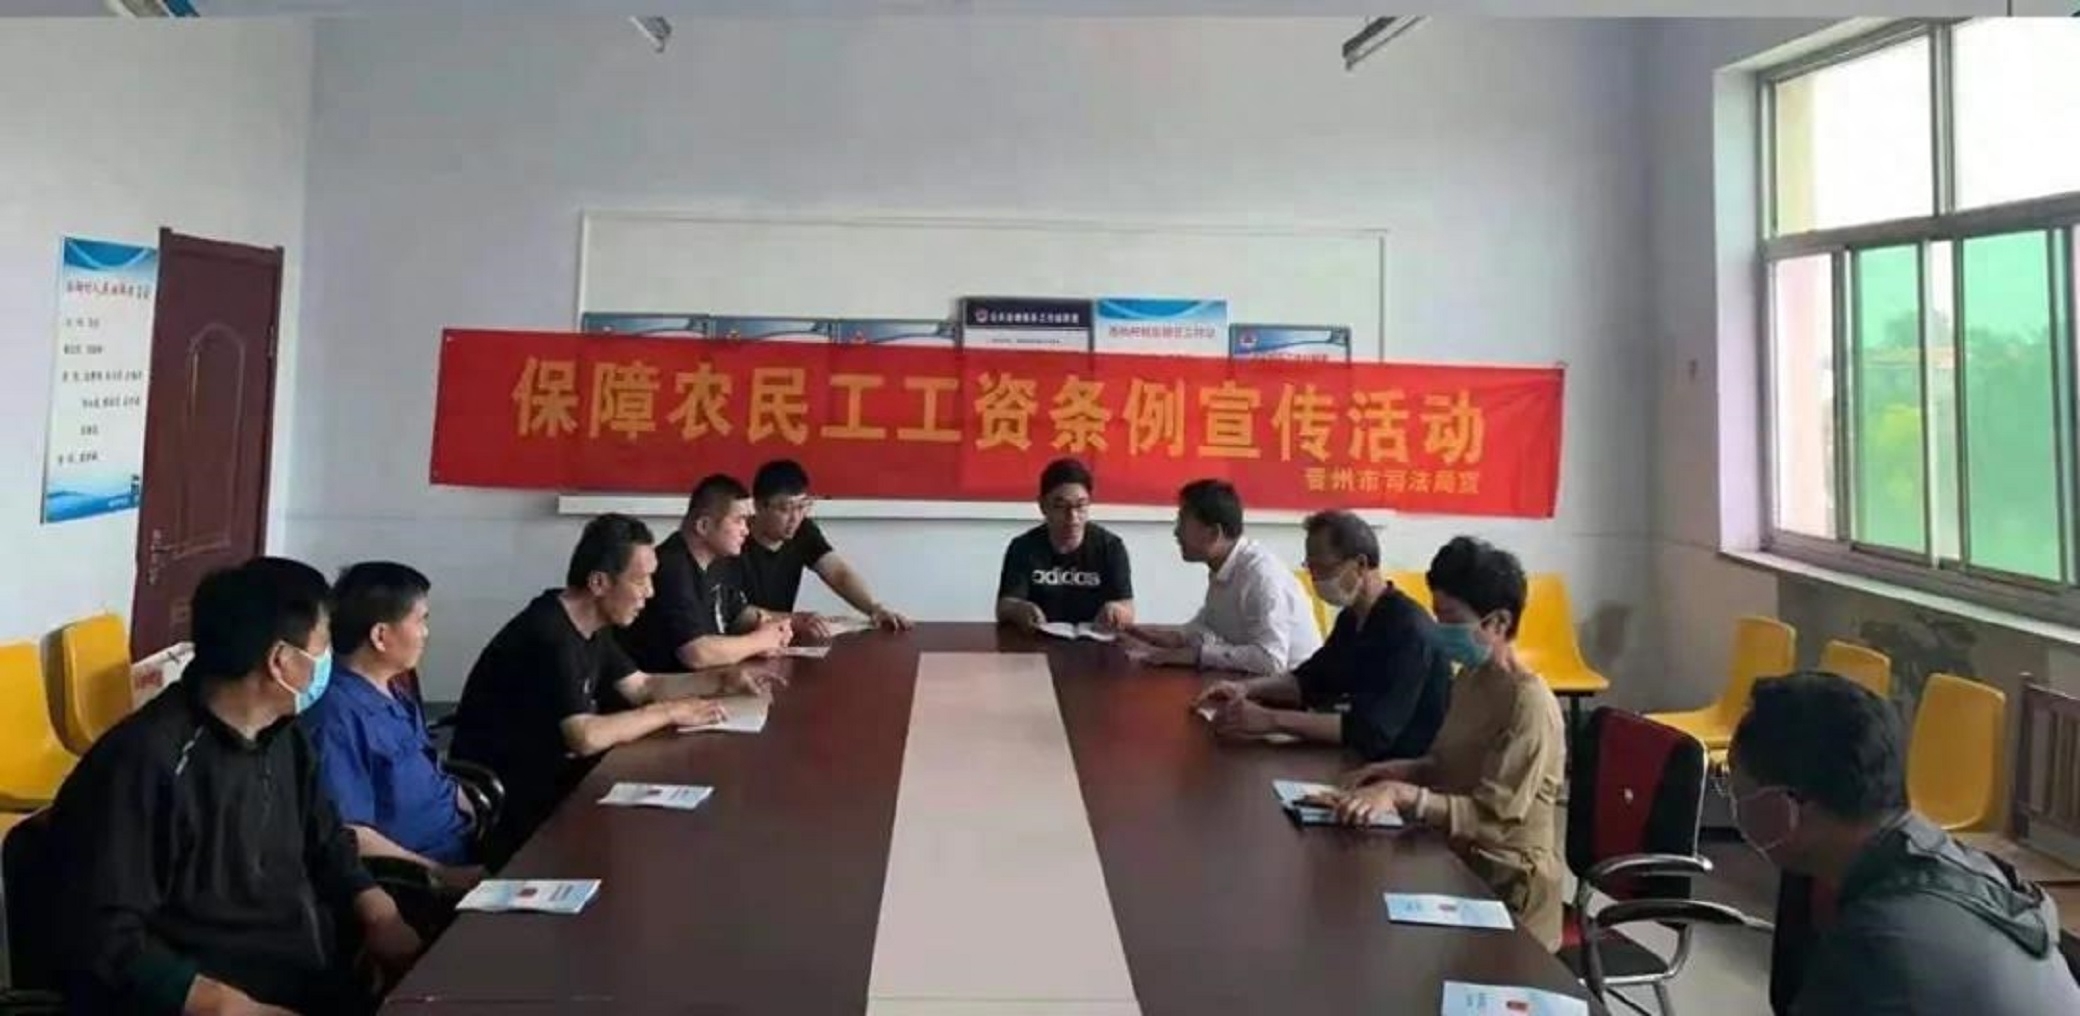 晋州市司法局开展“法援惠民生 助力农民工”普法宣传活动